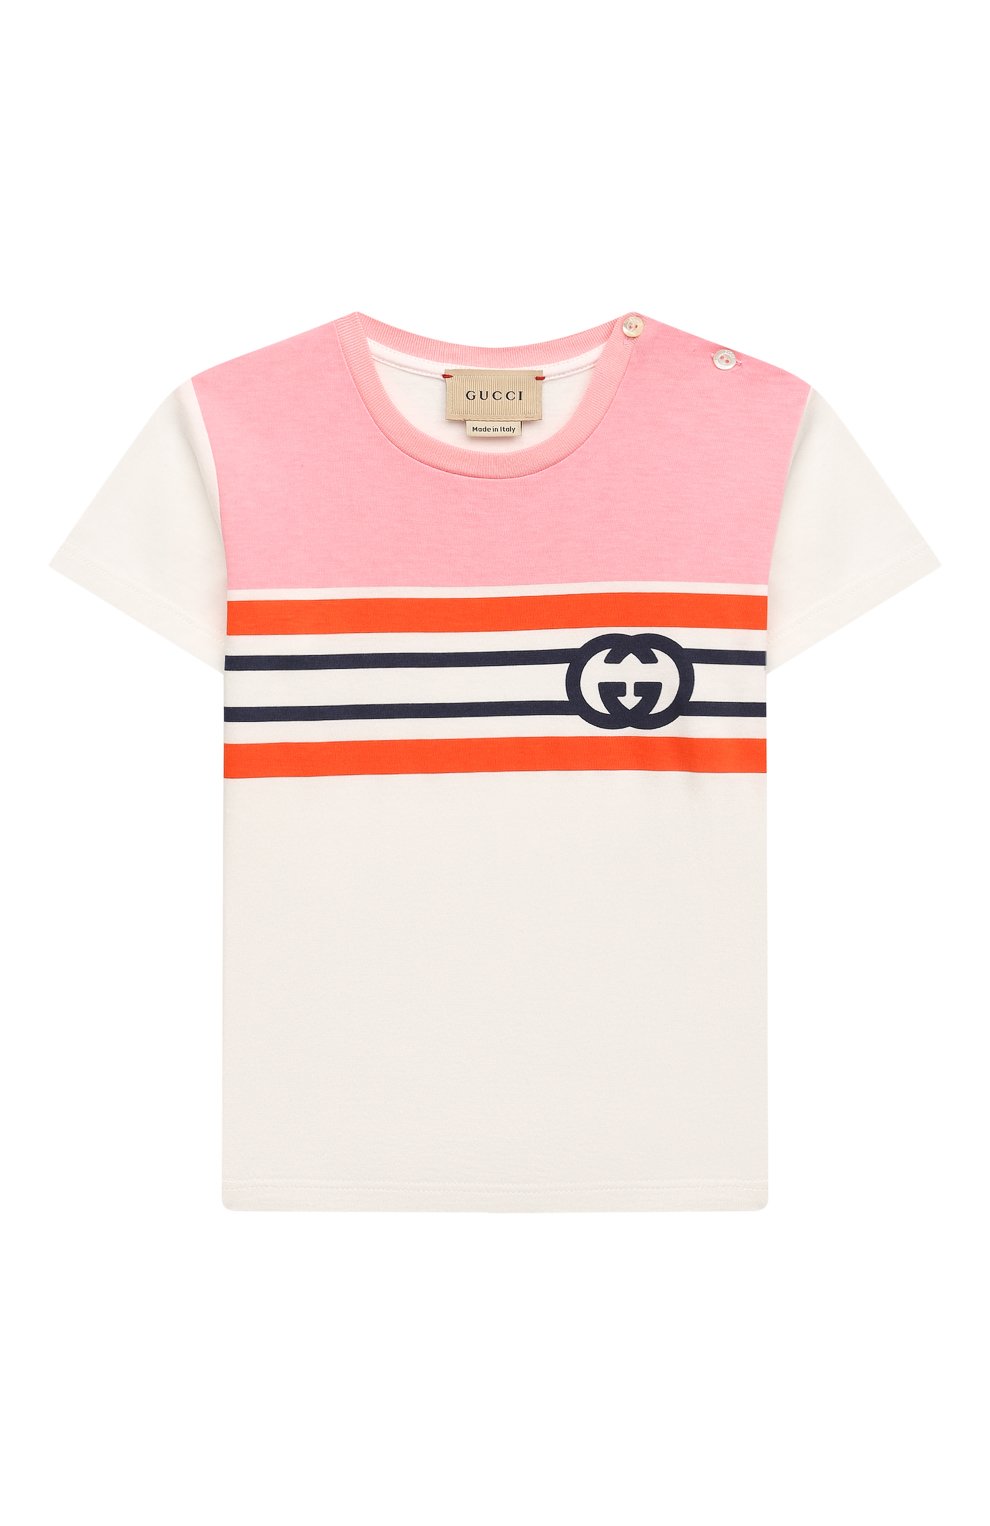 Хлопковая футболка GUCCI детский розового цвета — купить в интернет